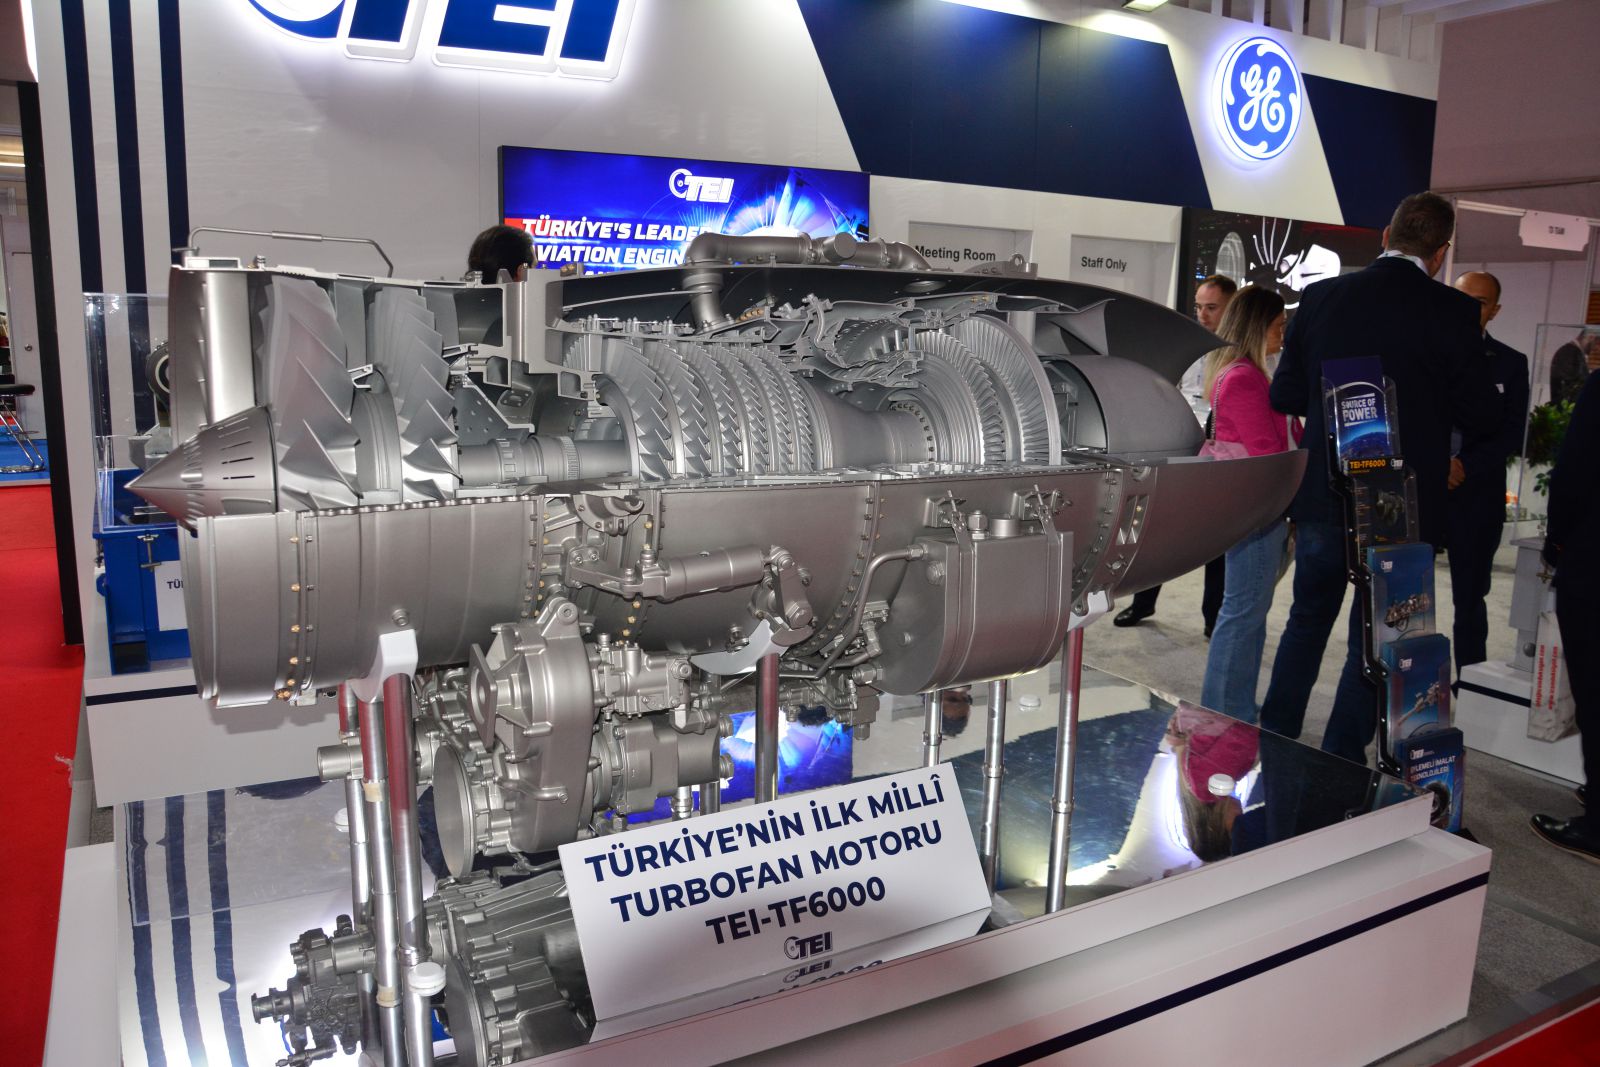 Türkiye'nin İlk Milli Turbofan Motoru TEI-TF6000 Tanıtıldı